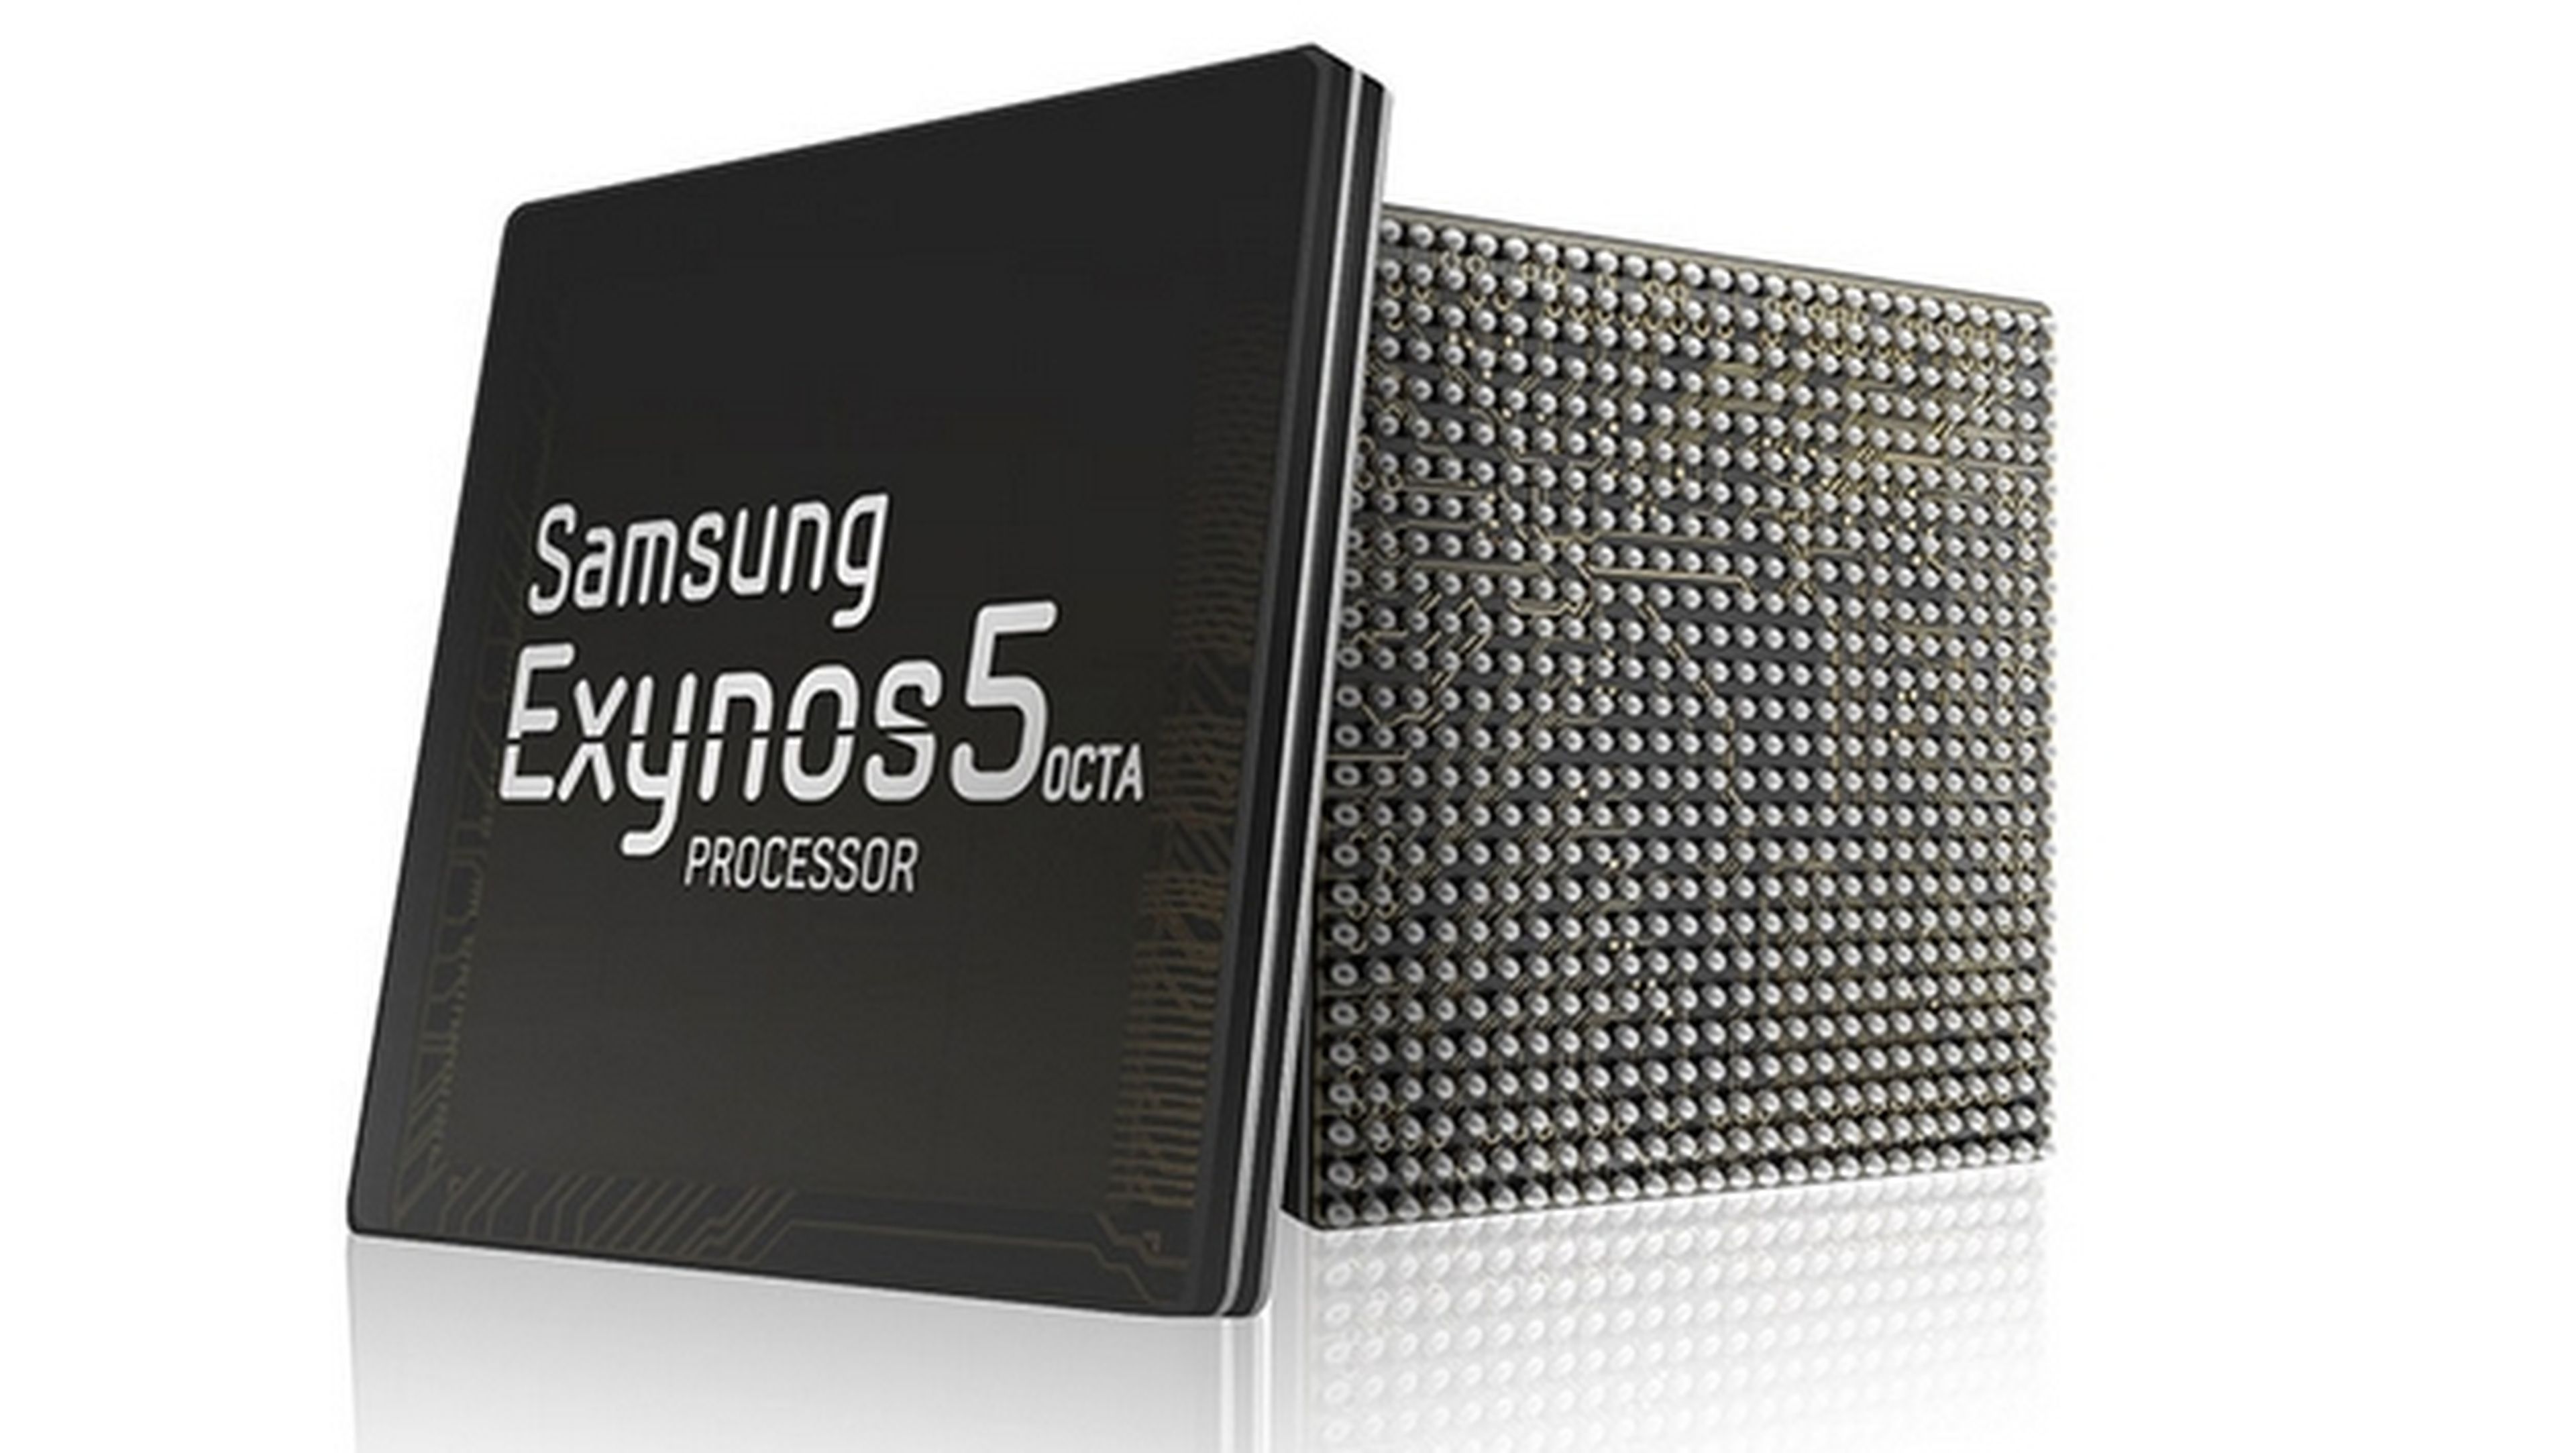 Samsung presenta su procesador Exynos 5430 de ocho núcleos con tecnología de 20nm.